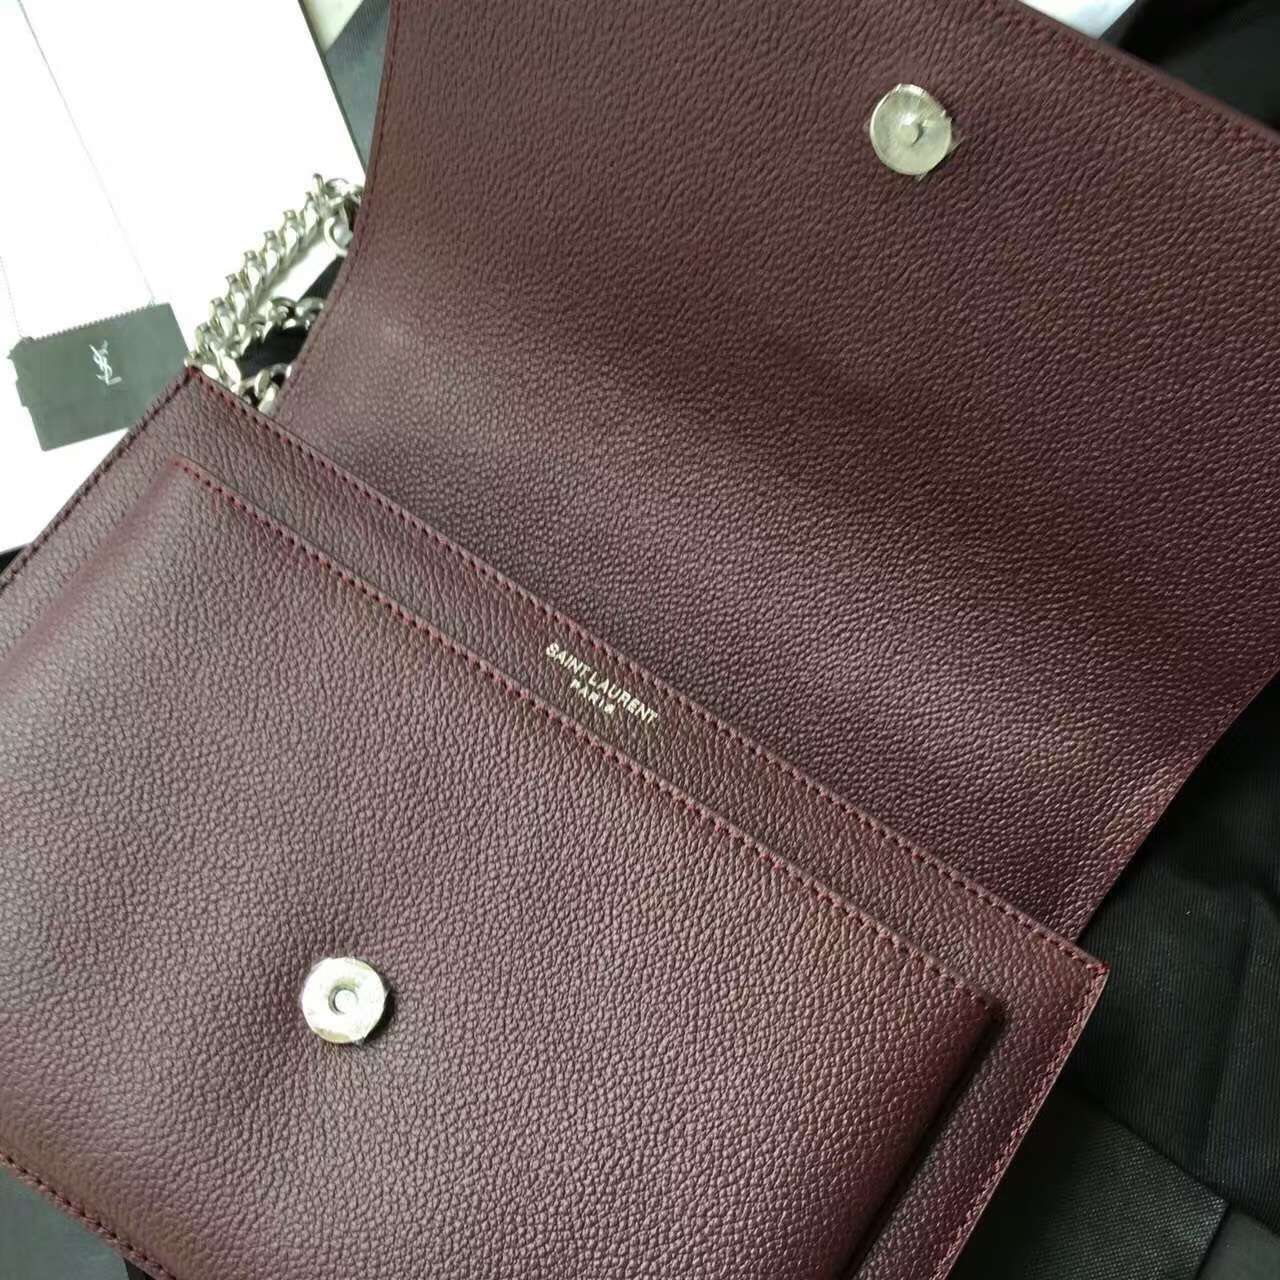 Limited Edition!2016 Saint Laurent Bags Cheap Sale-Saint Laurent Medium Sunset Monogram Bag in Bordeaux Grained Leather - Click Image to Close